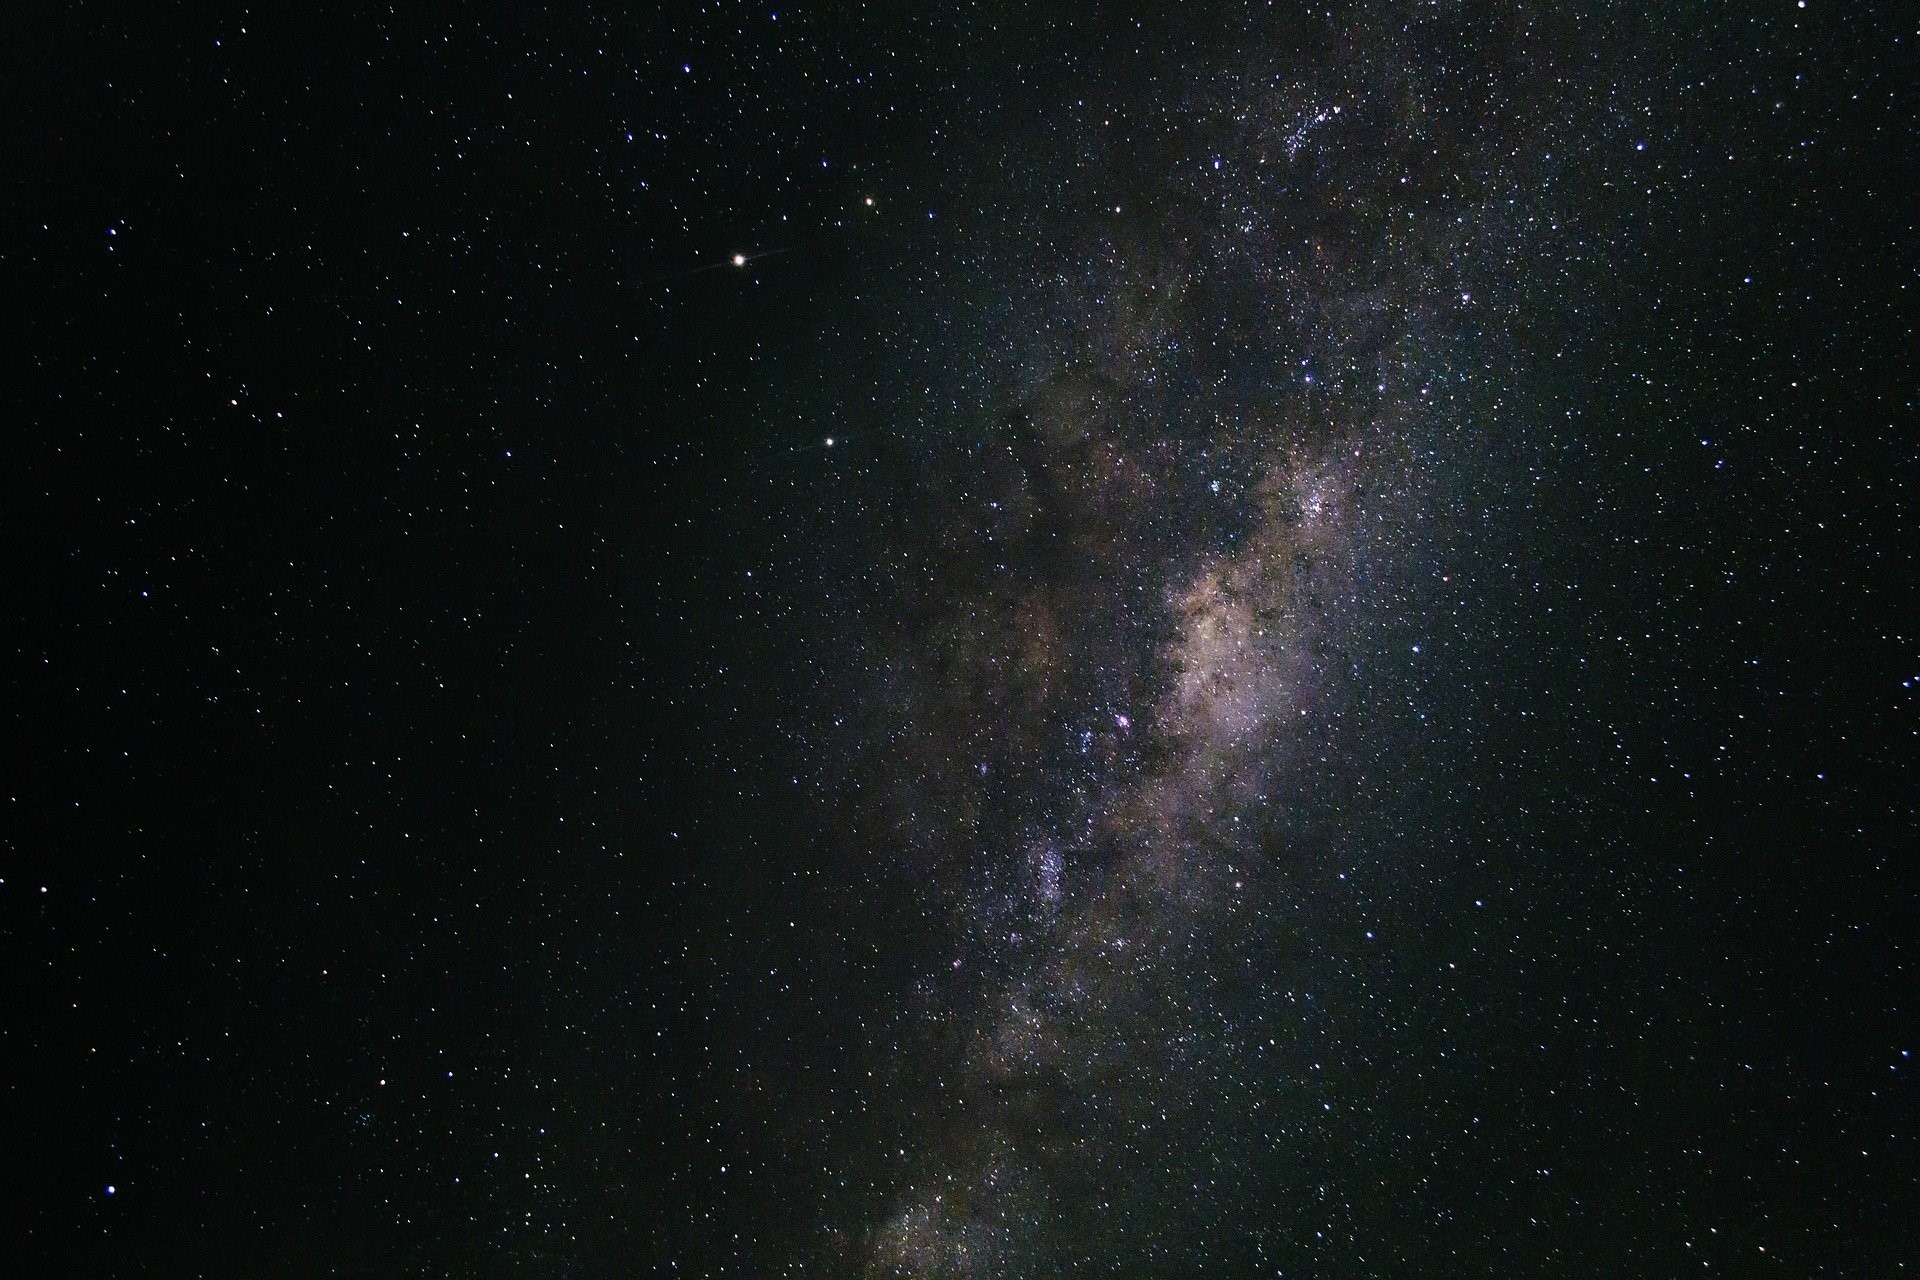 Milky Way Galaxy 3